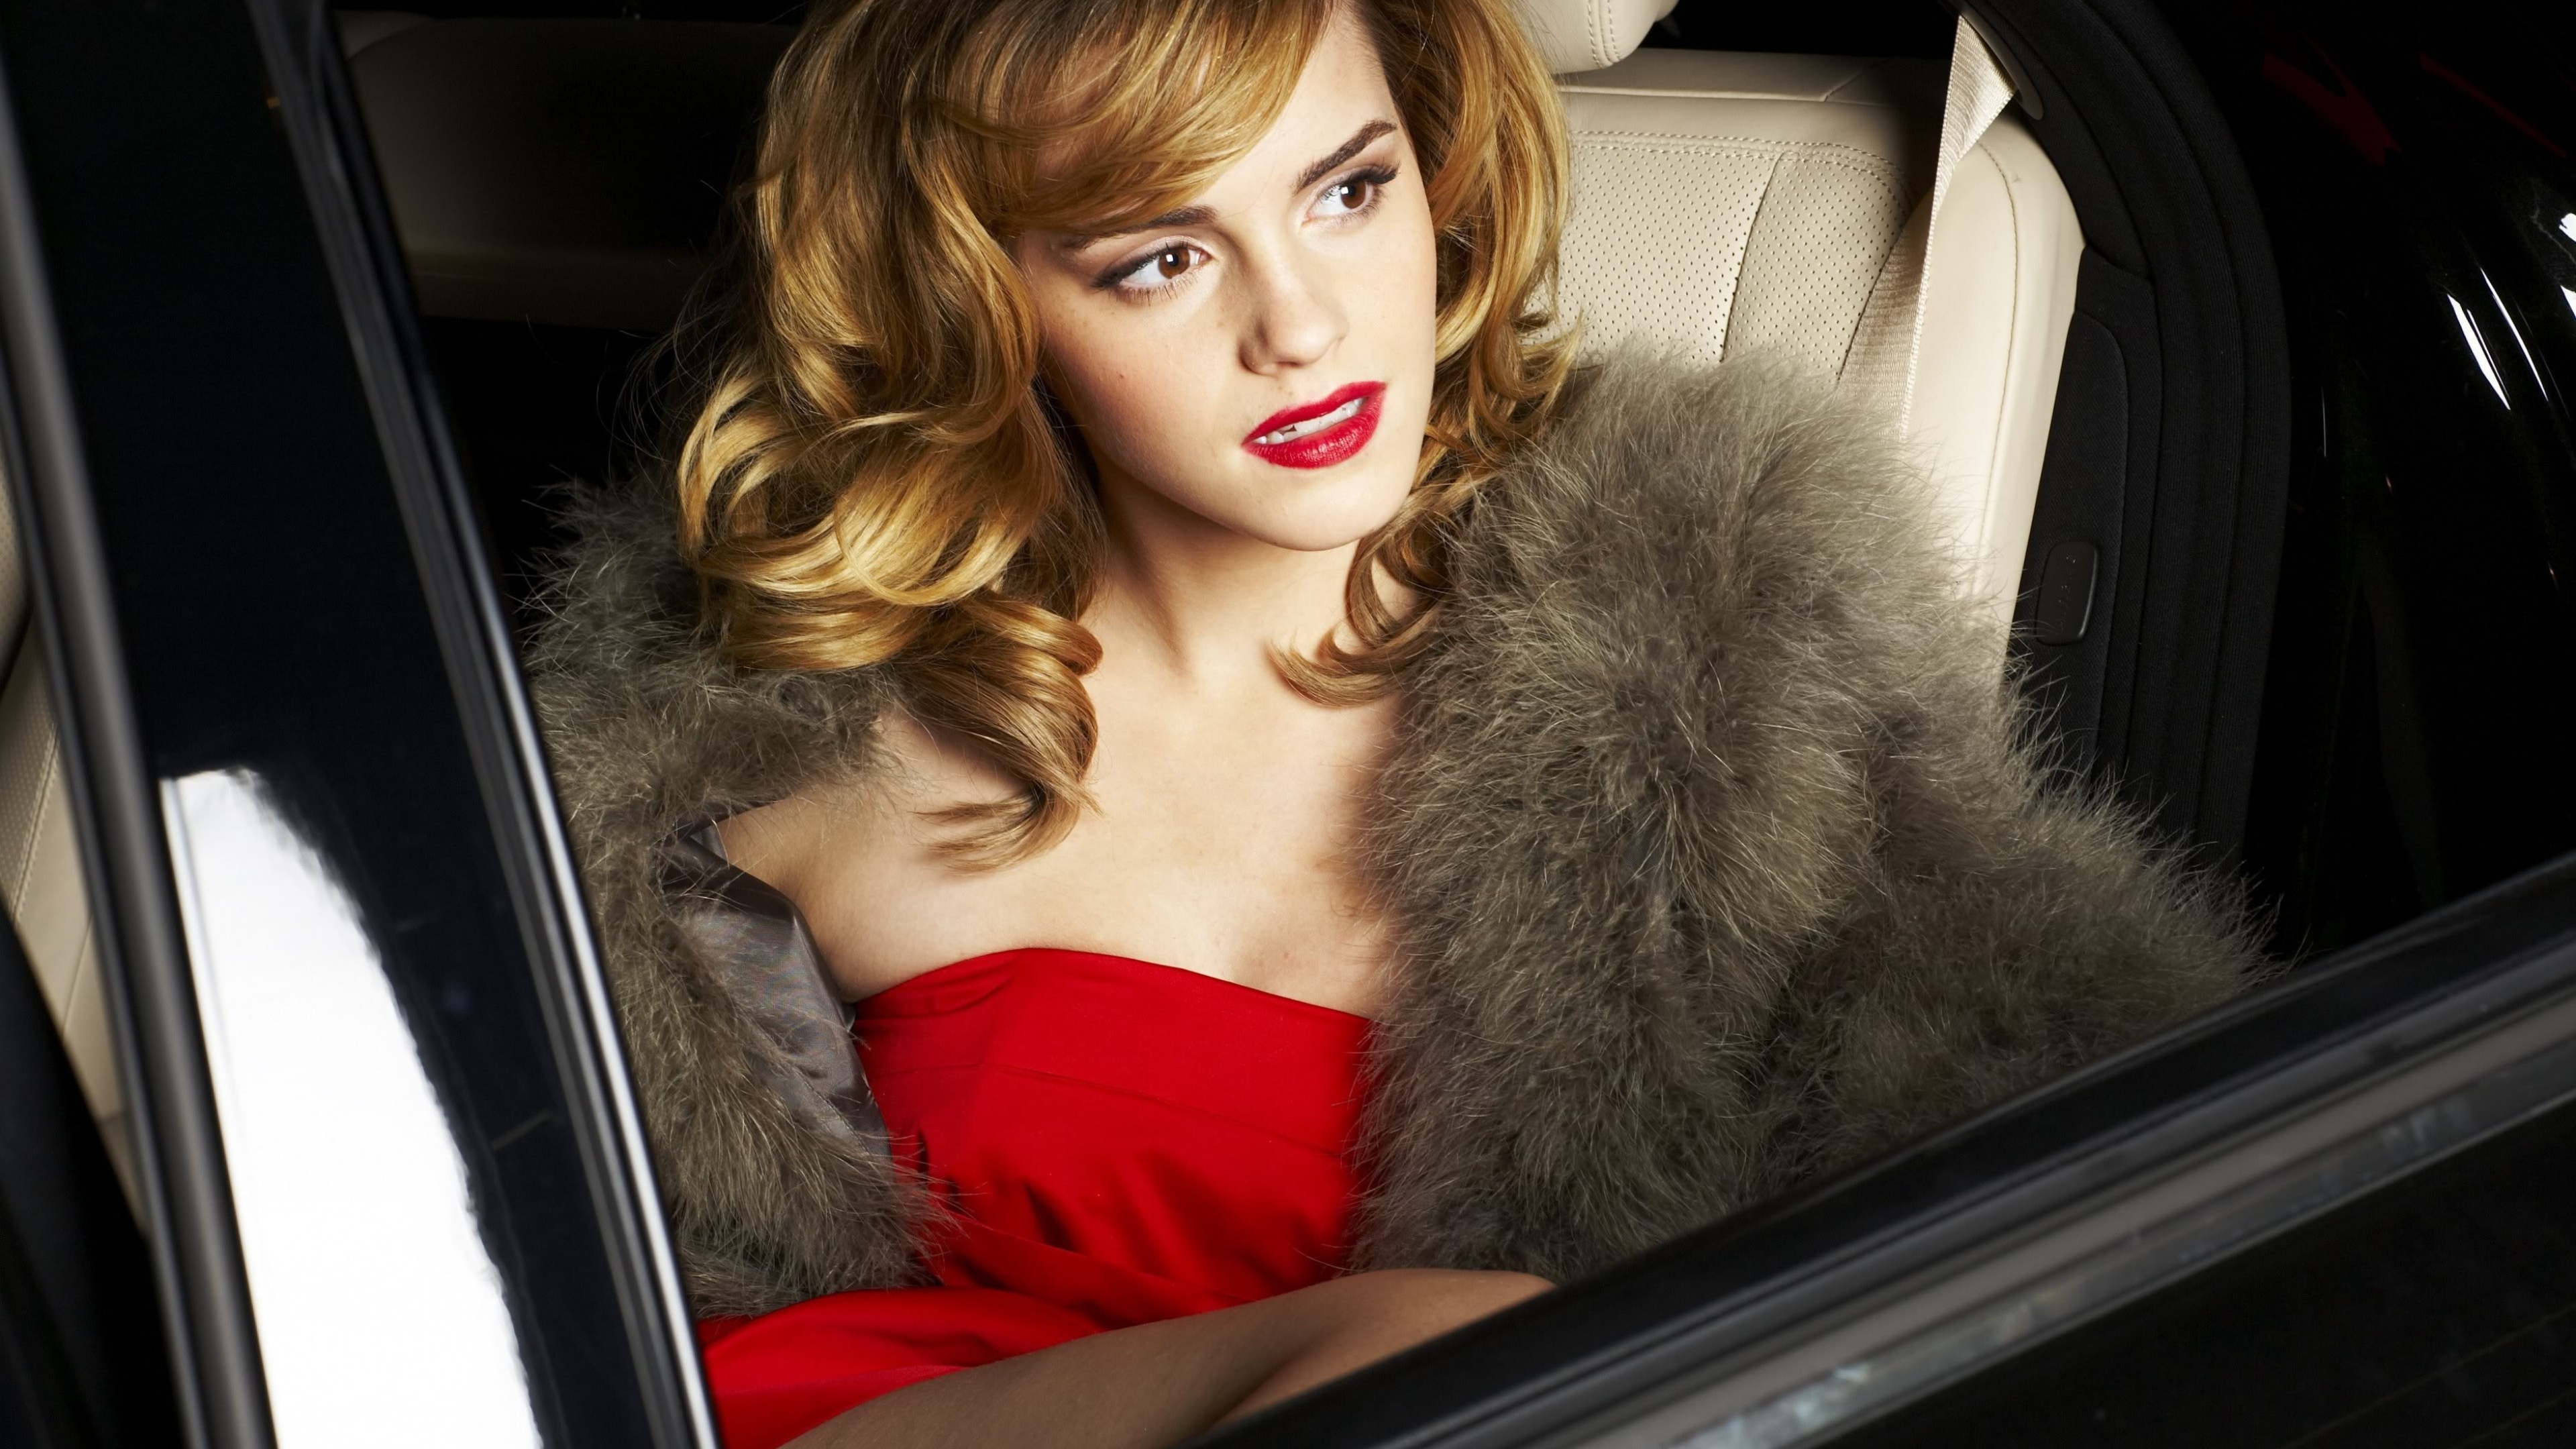 3840x2160 Emma Watson Blonde Red Dress 4k Wallpaper Hd